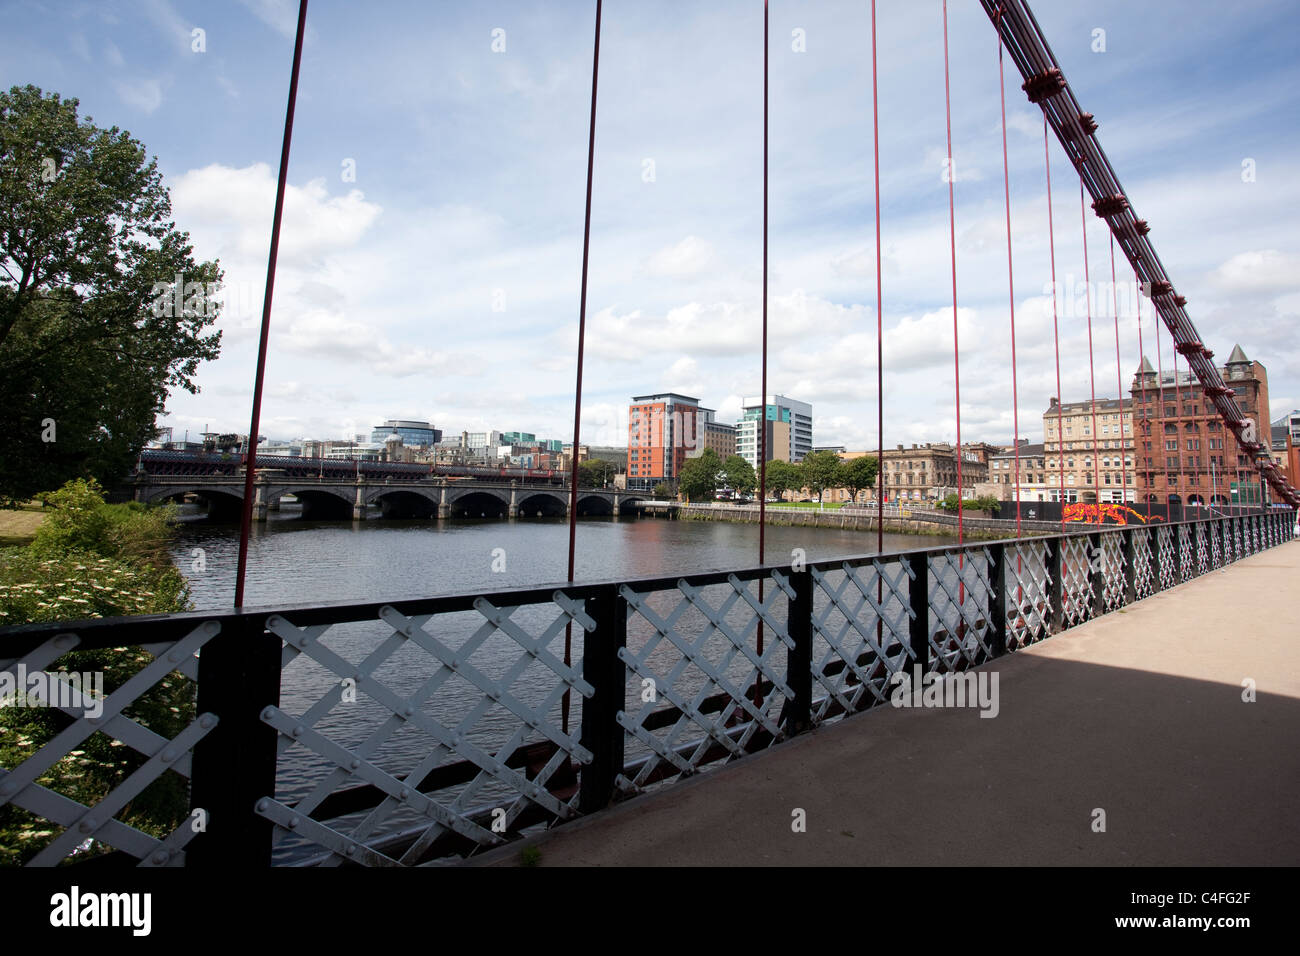 South Portland Street pont suspendu sur la rivière Clyde à Glasgow.Photo:Jeff Gilbert Banque D'Images